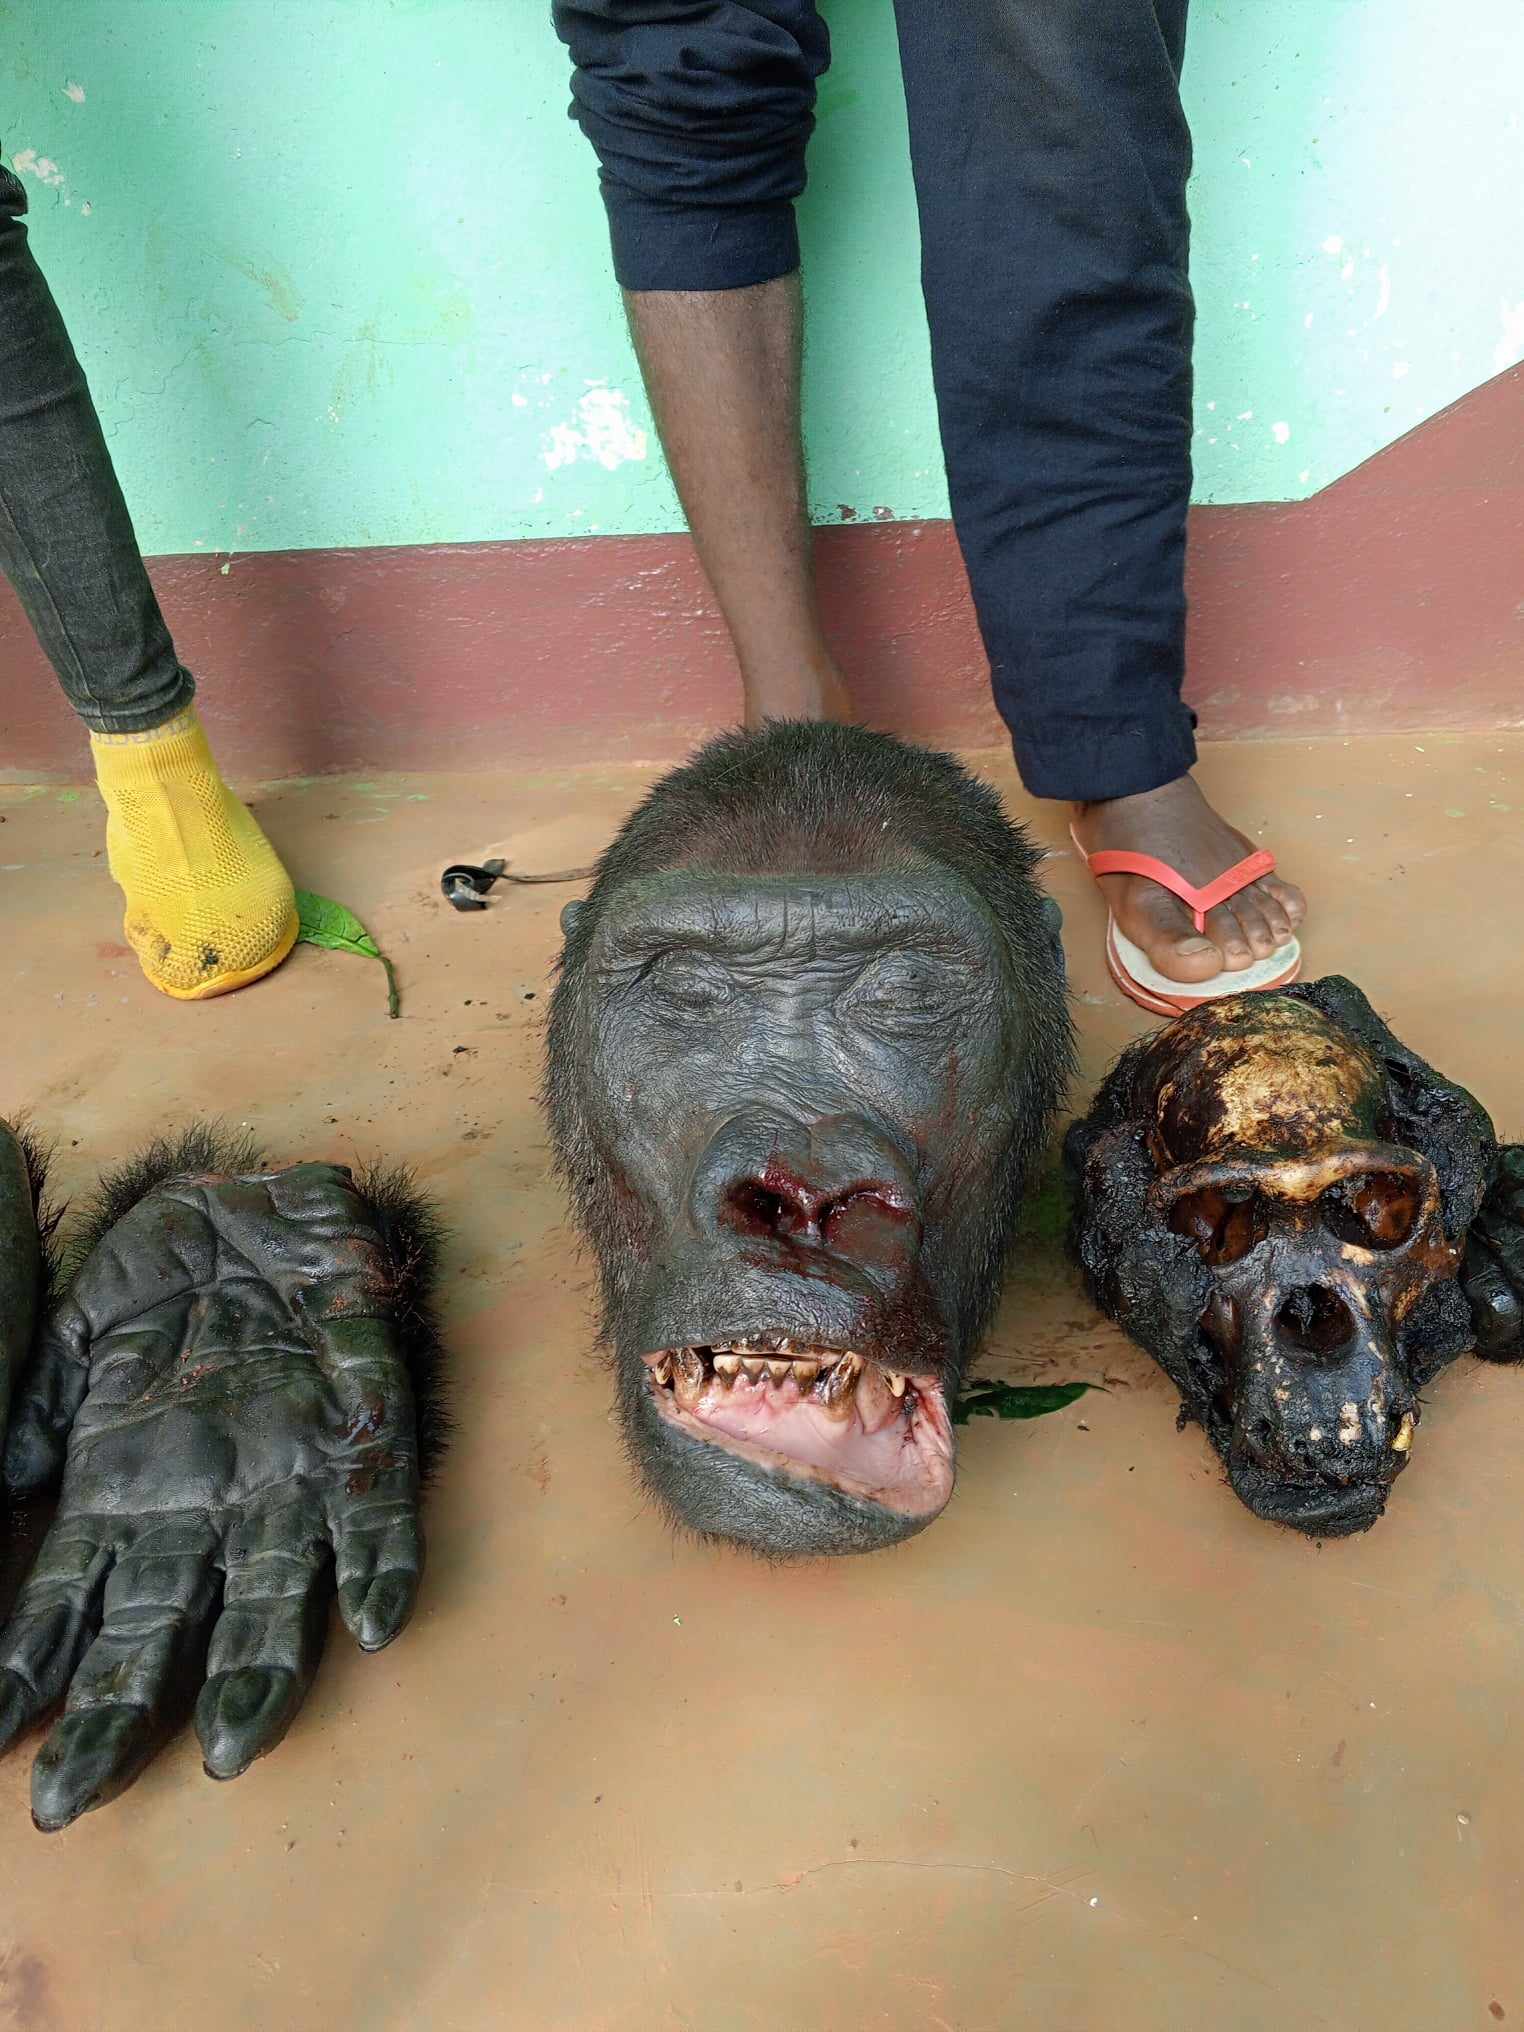 Cameroun : deux trafiquants fauniques arrêtés avec des parties de gorilles à Doumé